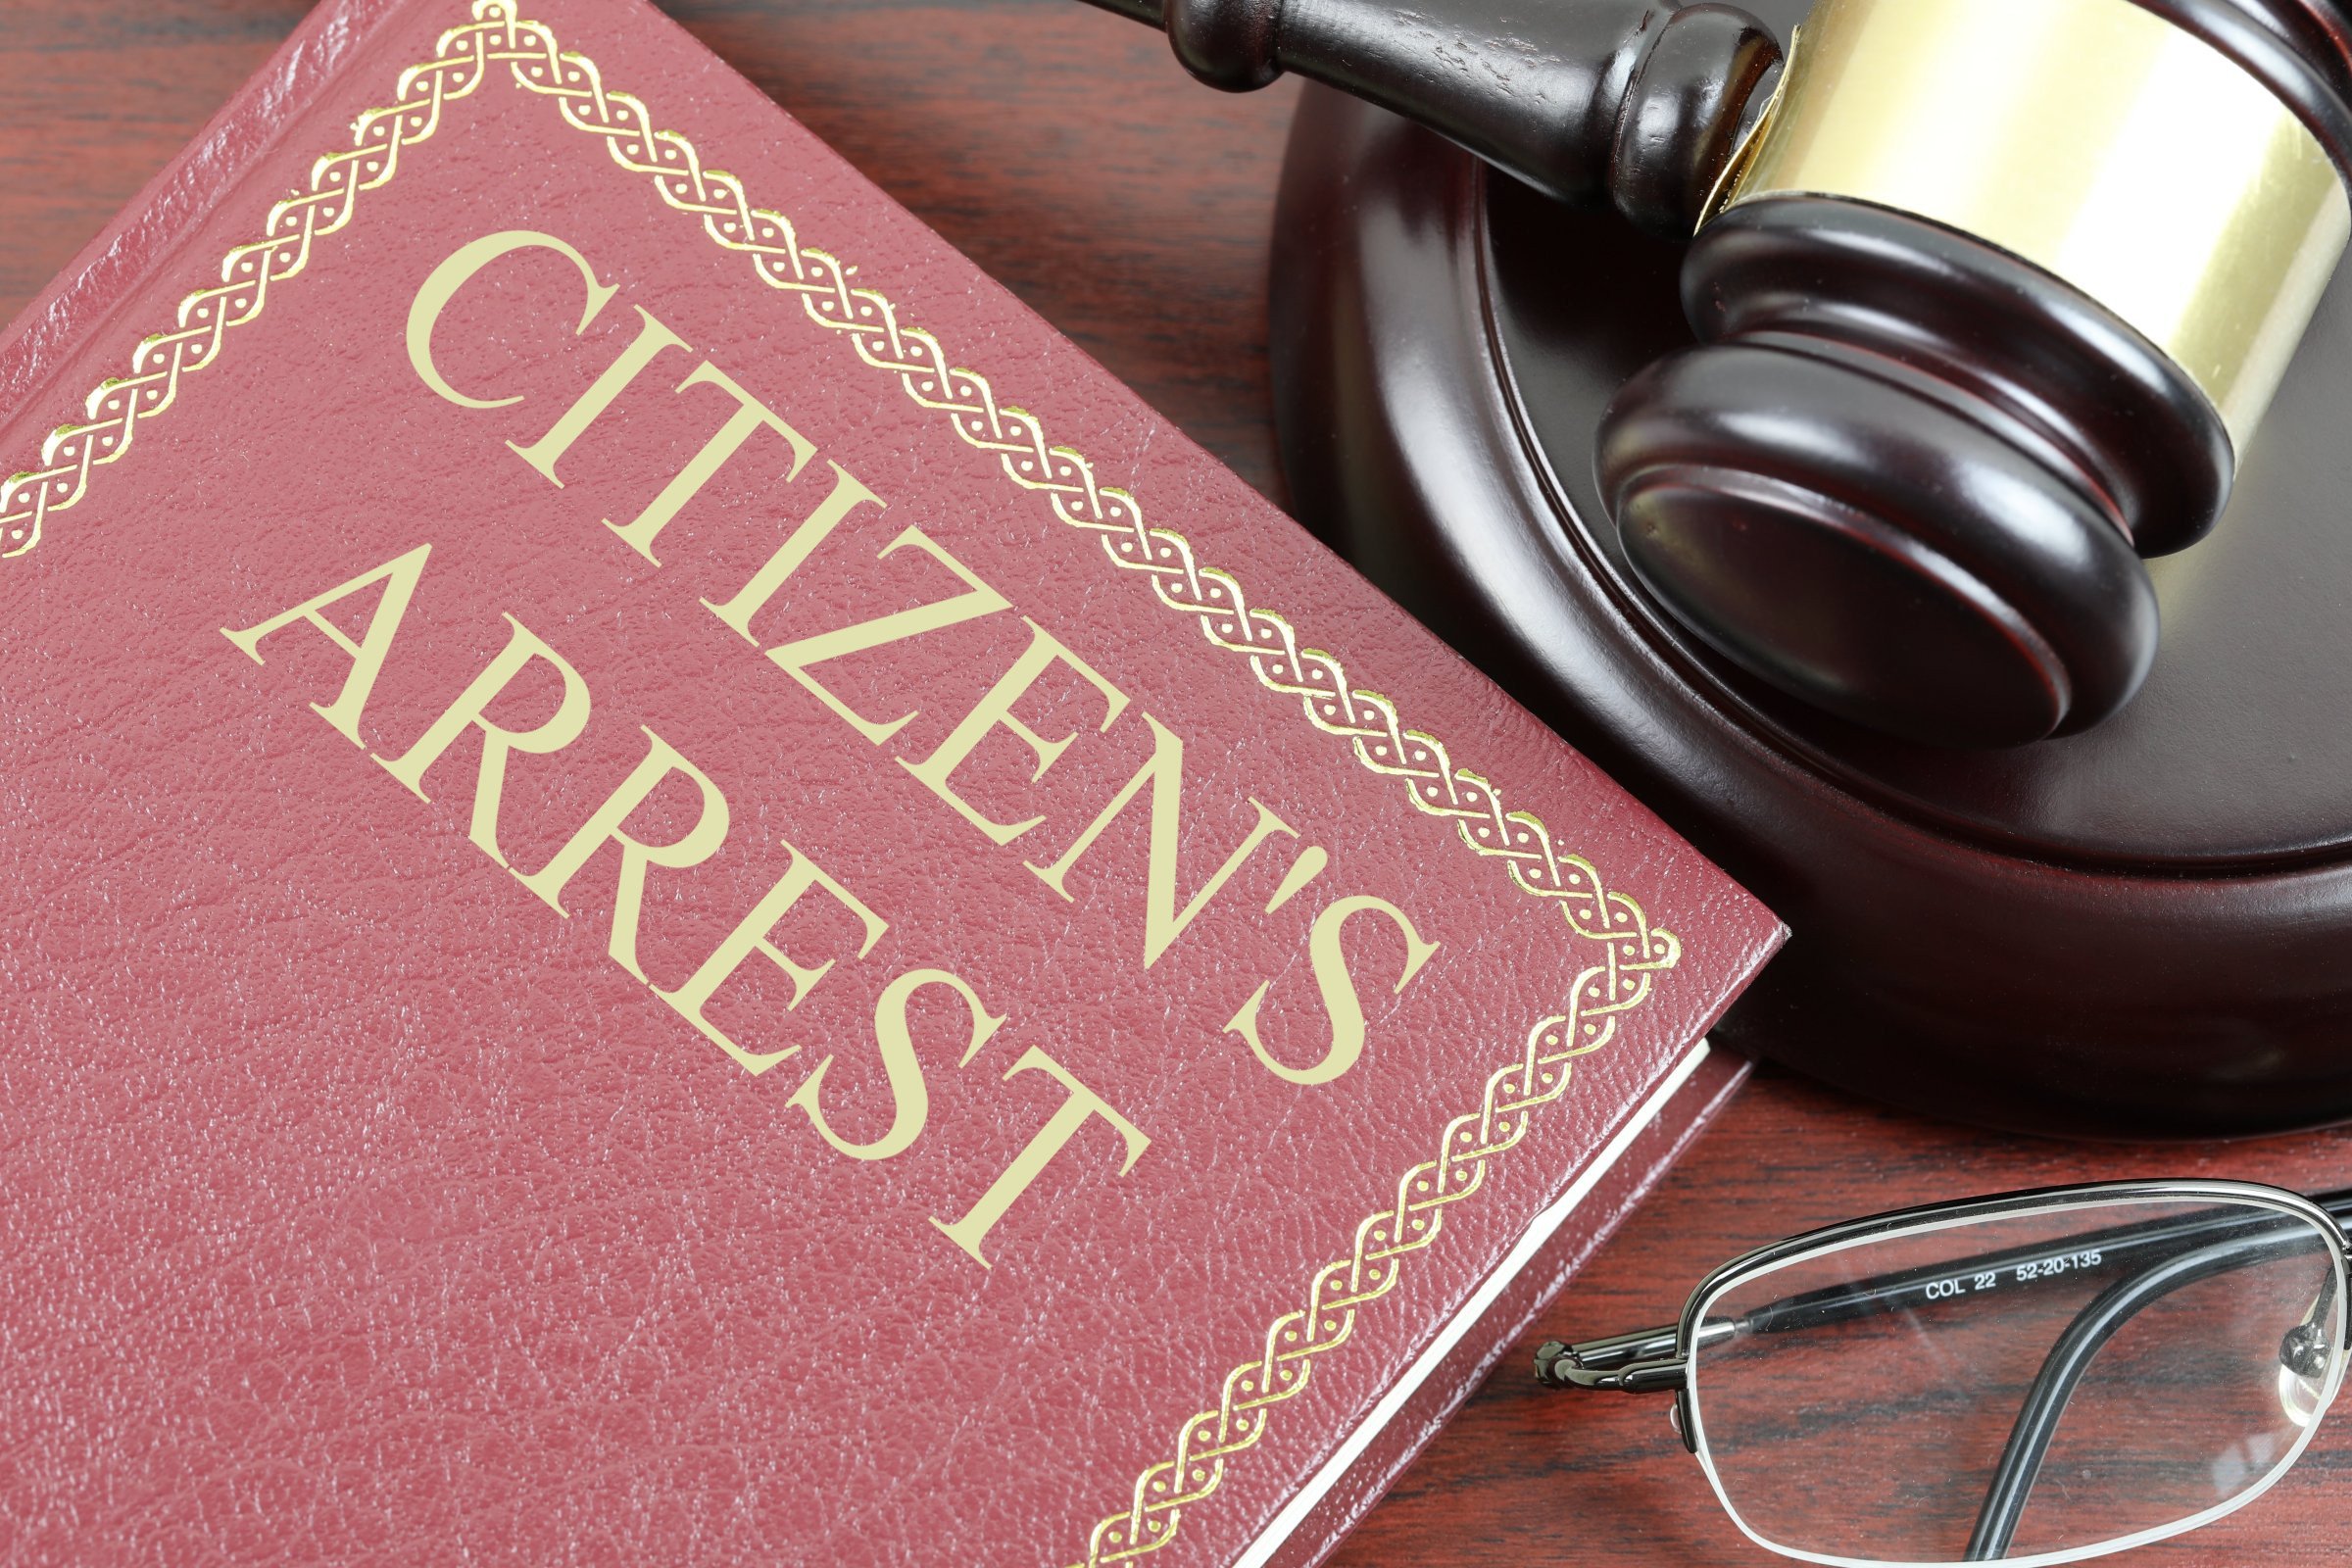 citizens arrest